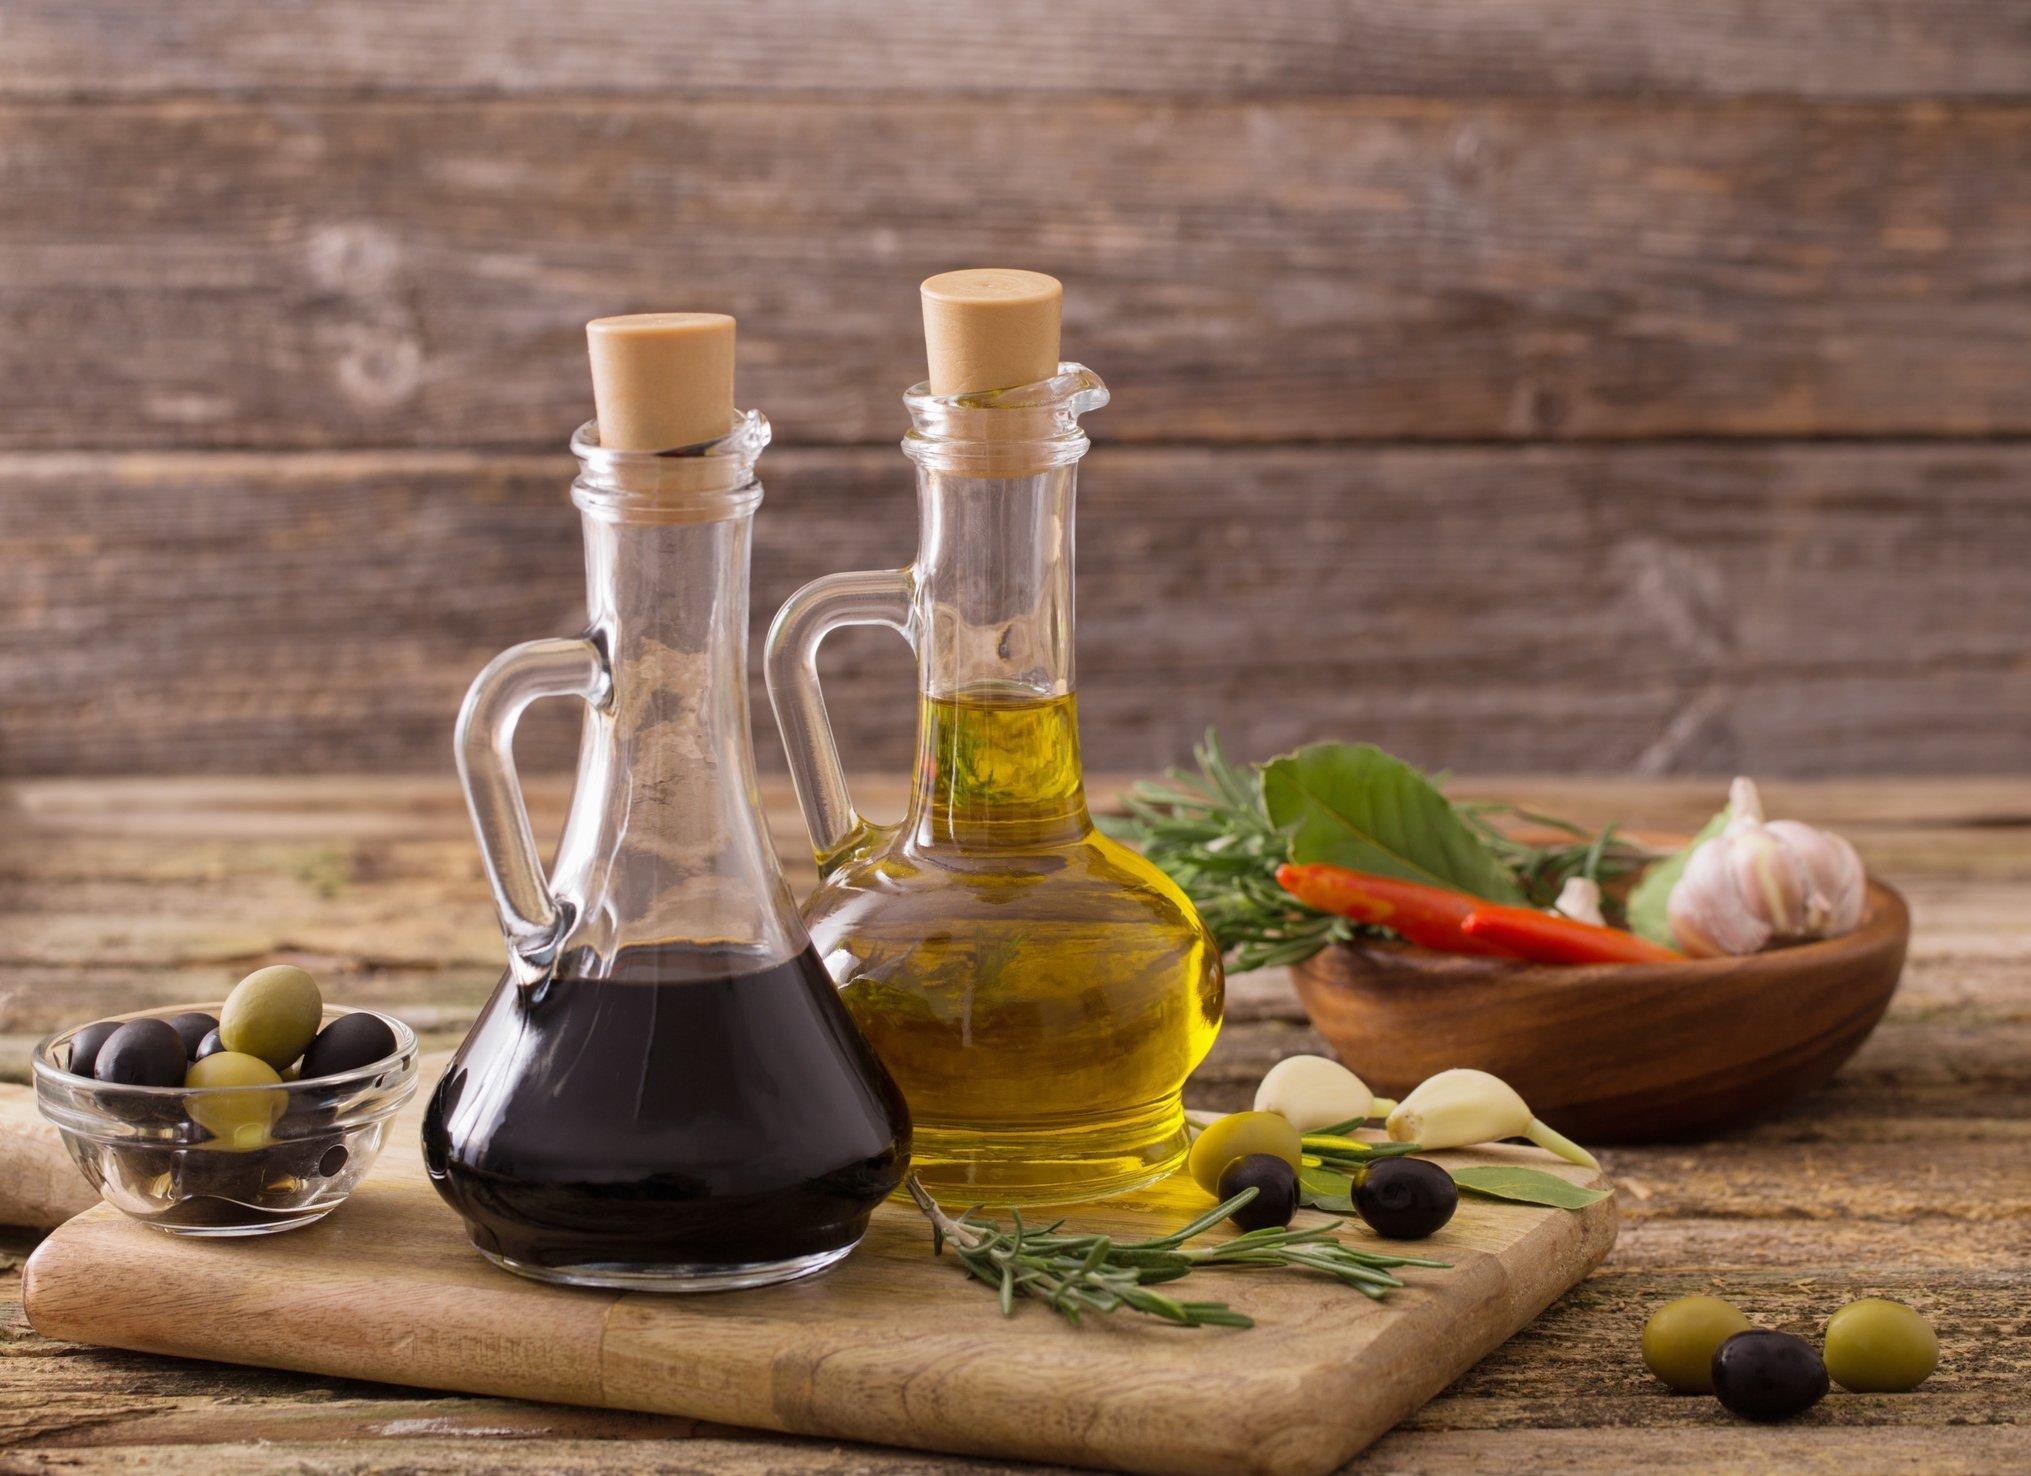 Is Balsamic Vinegar Good For A Diabetic?